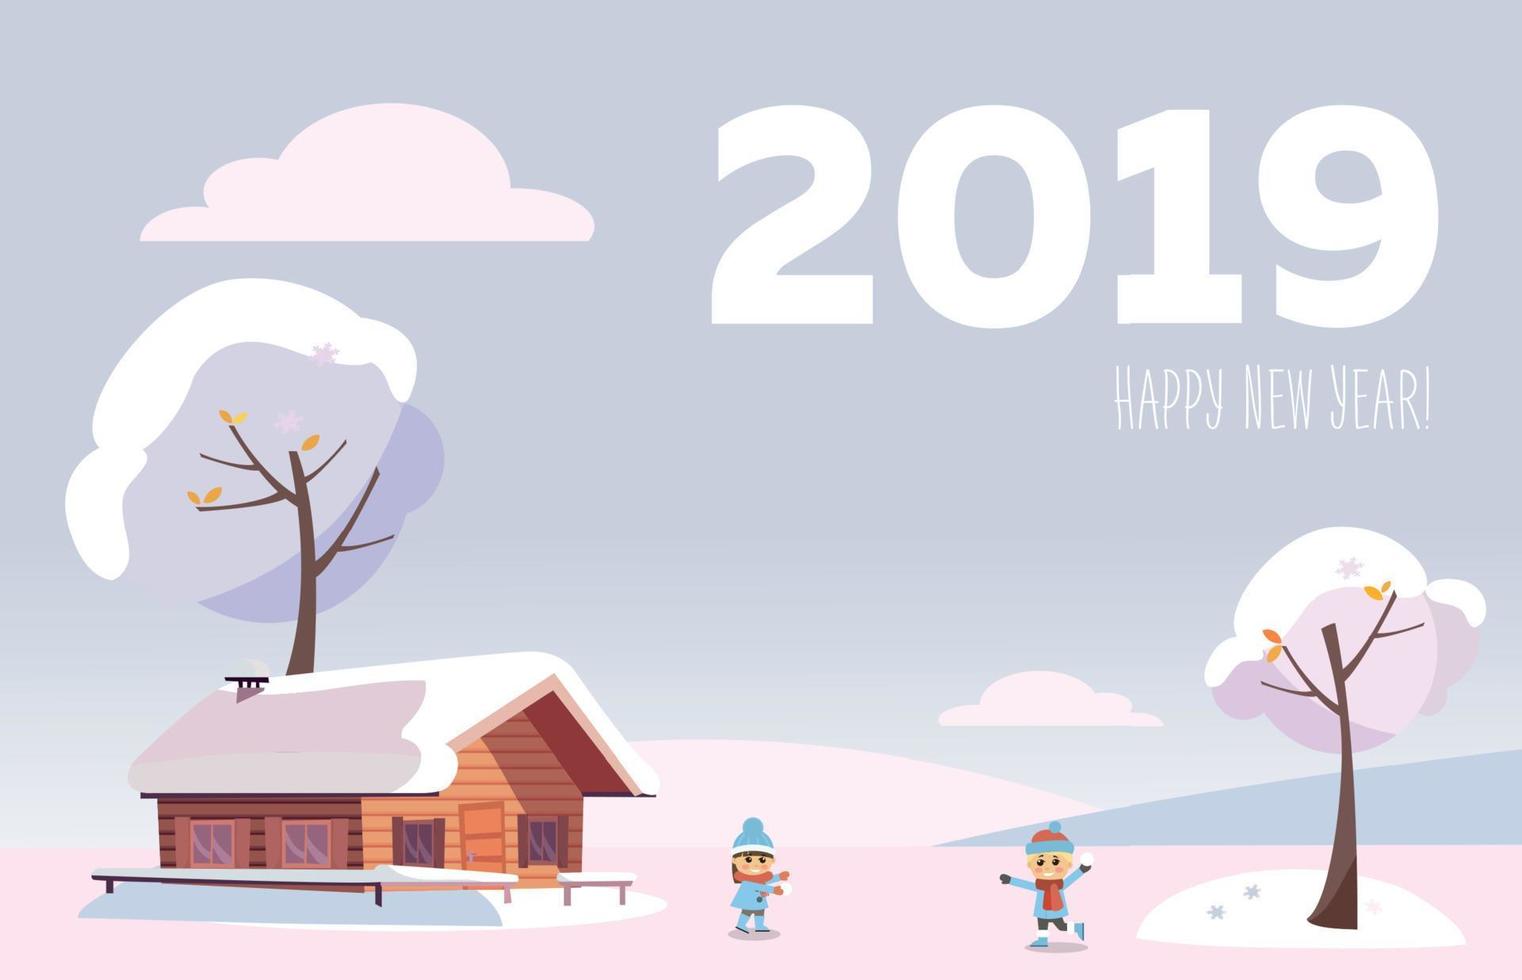 tarjeta plana vectorial 2019 feliz año nuevo. paisaje de invierno nevado blanco con una pequeña casa de campo y árboles cubiertos de nieve en las colinas cubiertas de nieve en los bosques nevados con niños jugando peleas de bolas de nieve. vector